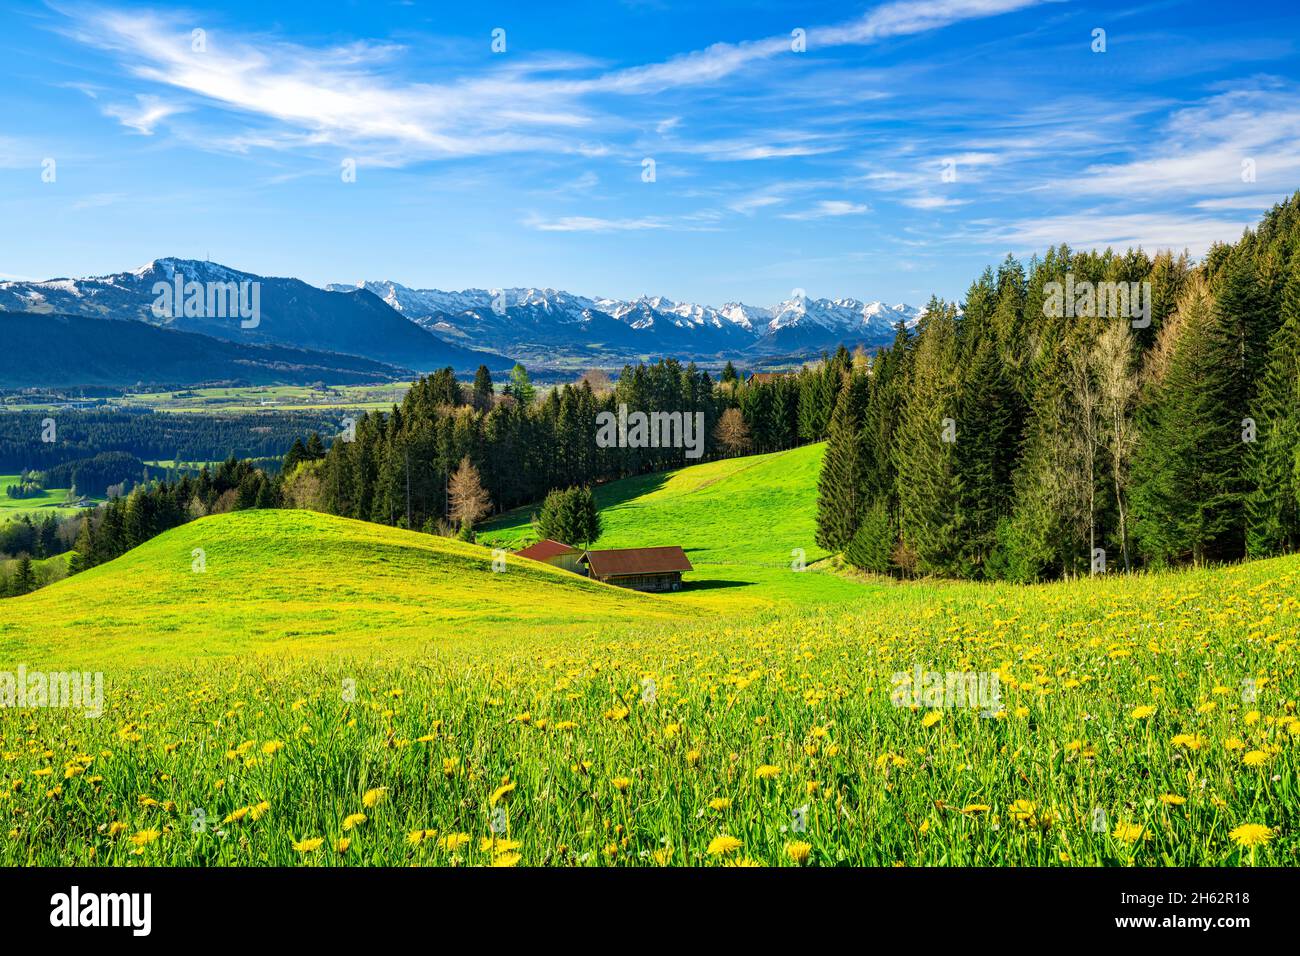 printemps dans l'allgäu. vue sur l'illertal aux alpes de l'allgäu avec les grünten. prairies, forêts et montagnes enneigées sous un ciel bleu. bavière, allemagne, europe Banque D'Images